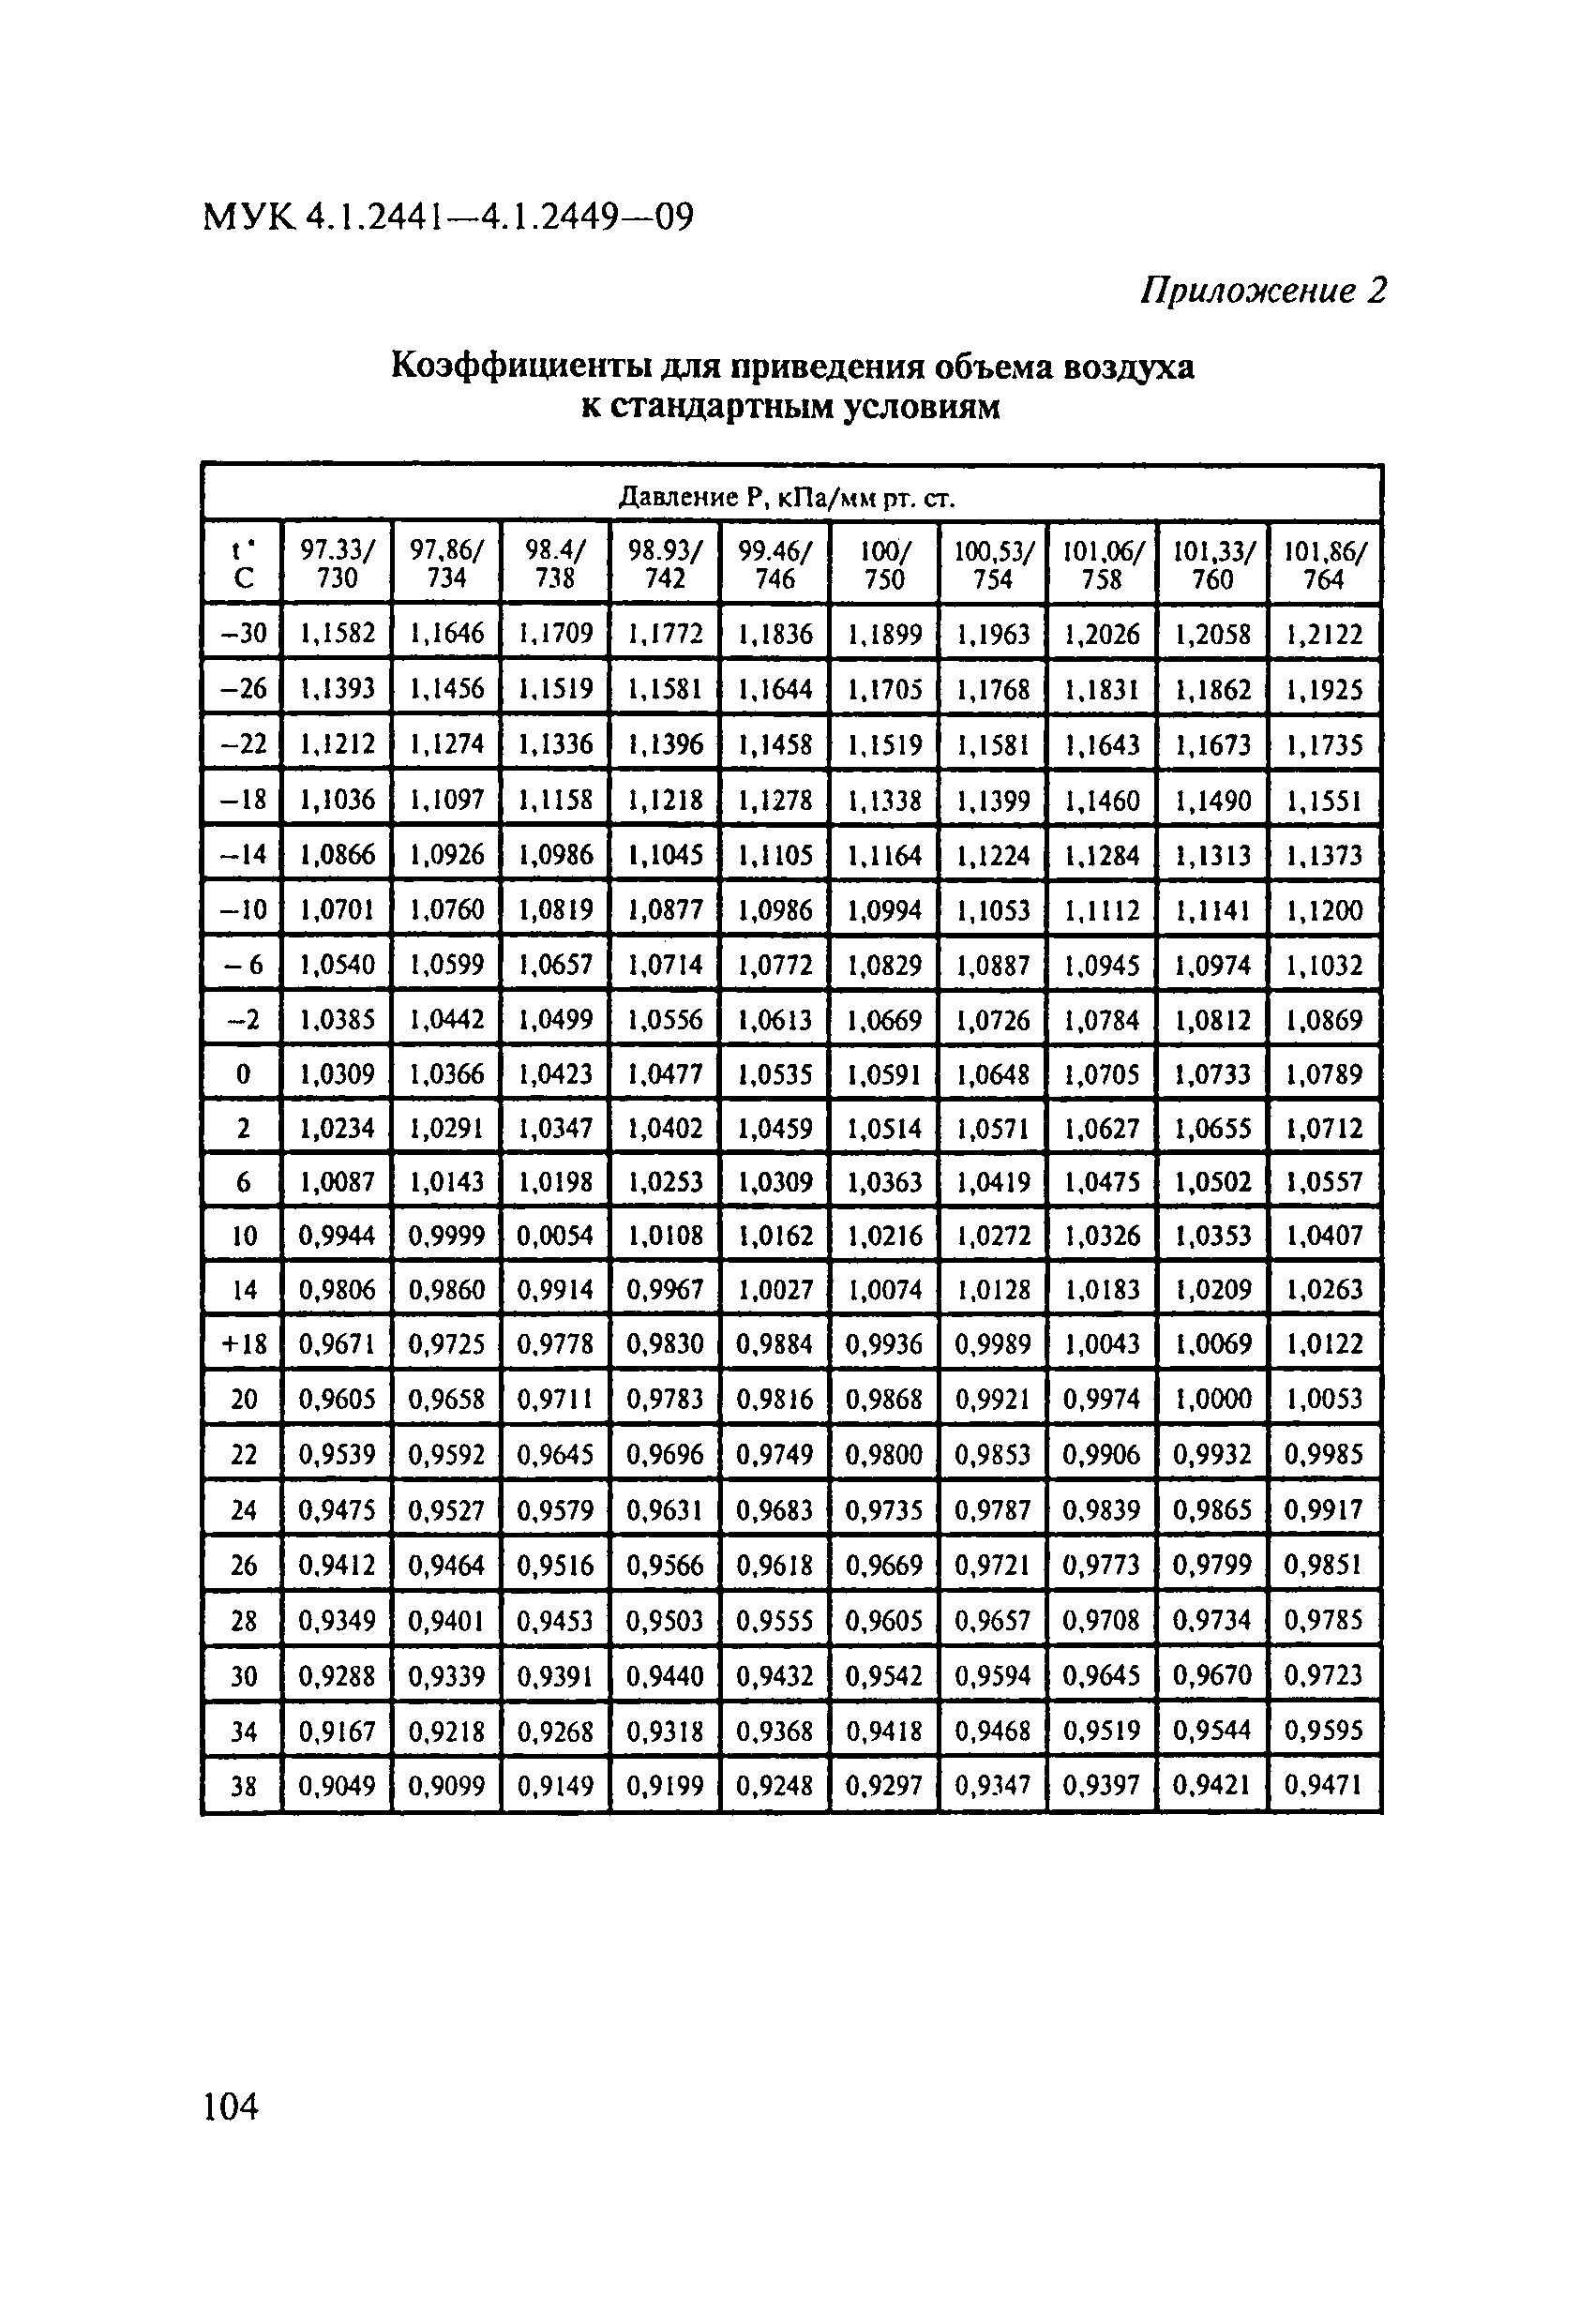 МУК 4.1.2447-09